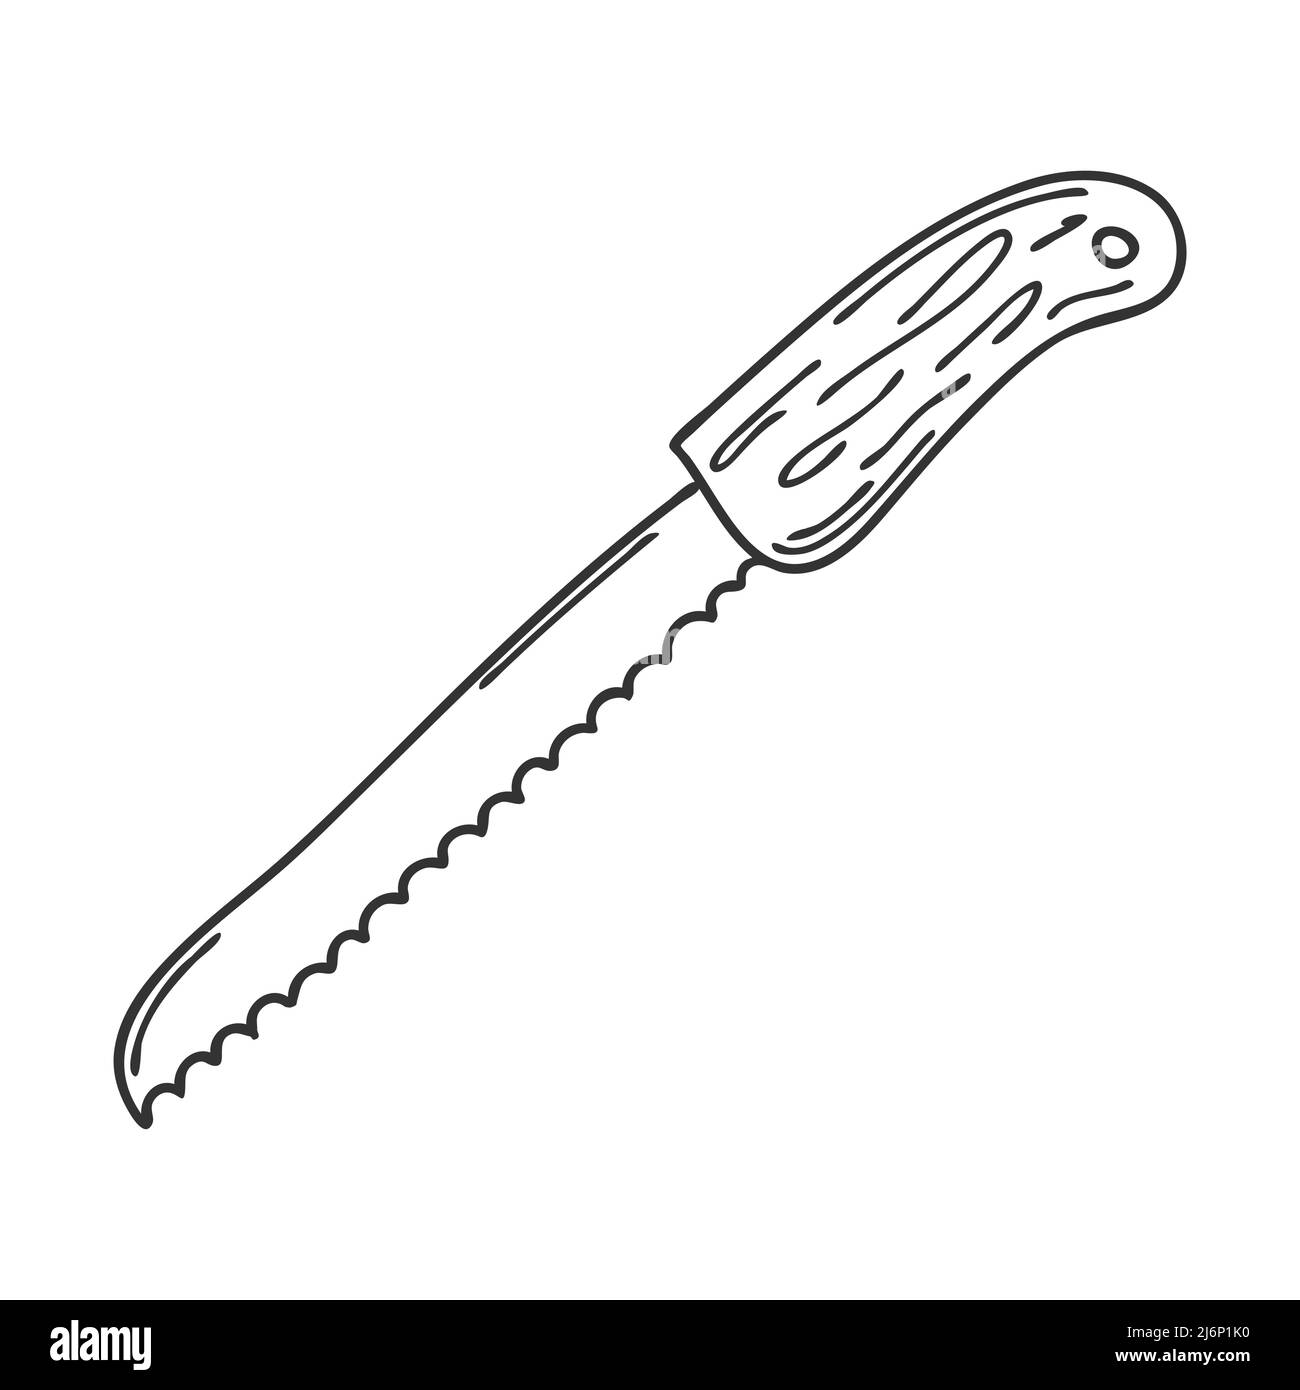 Couteau à pain vintage Banque d'images noir et blanc - Alamy